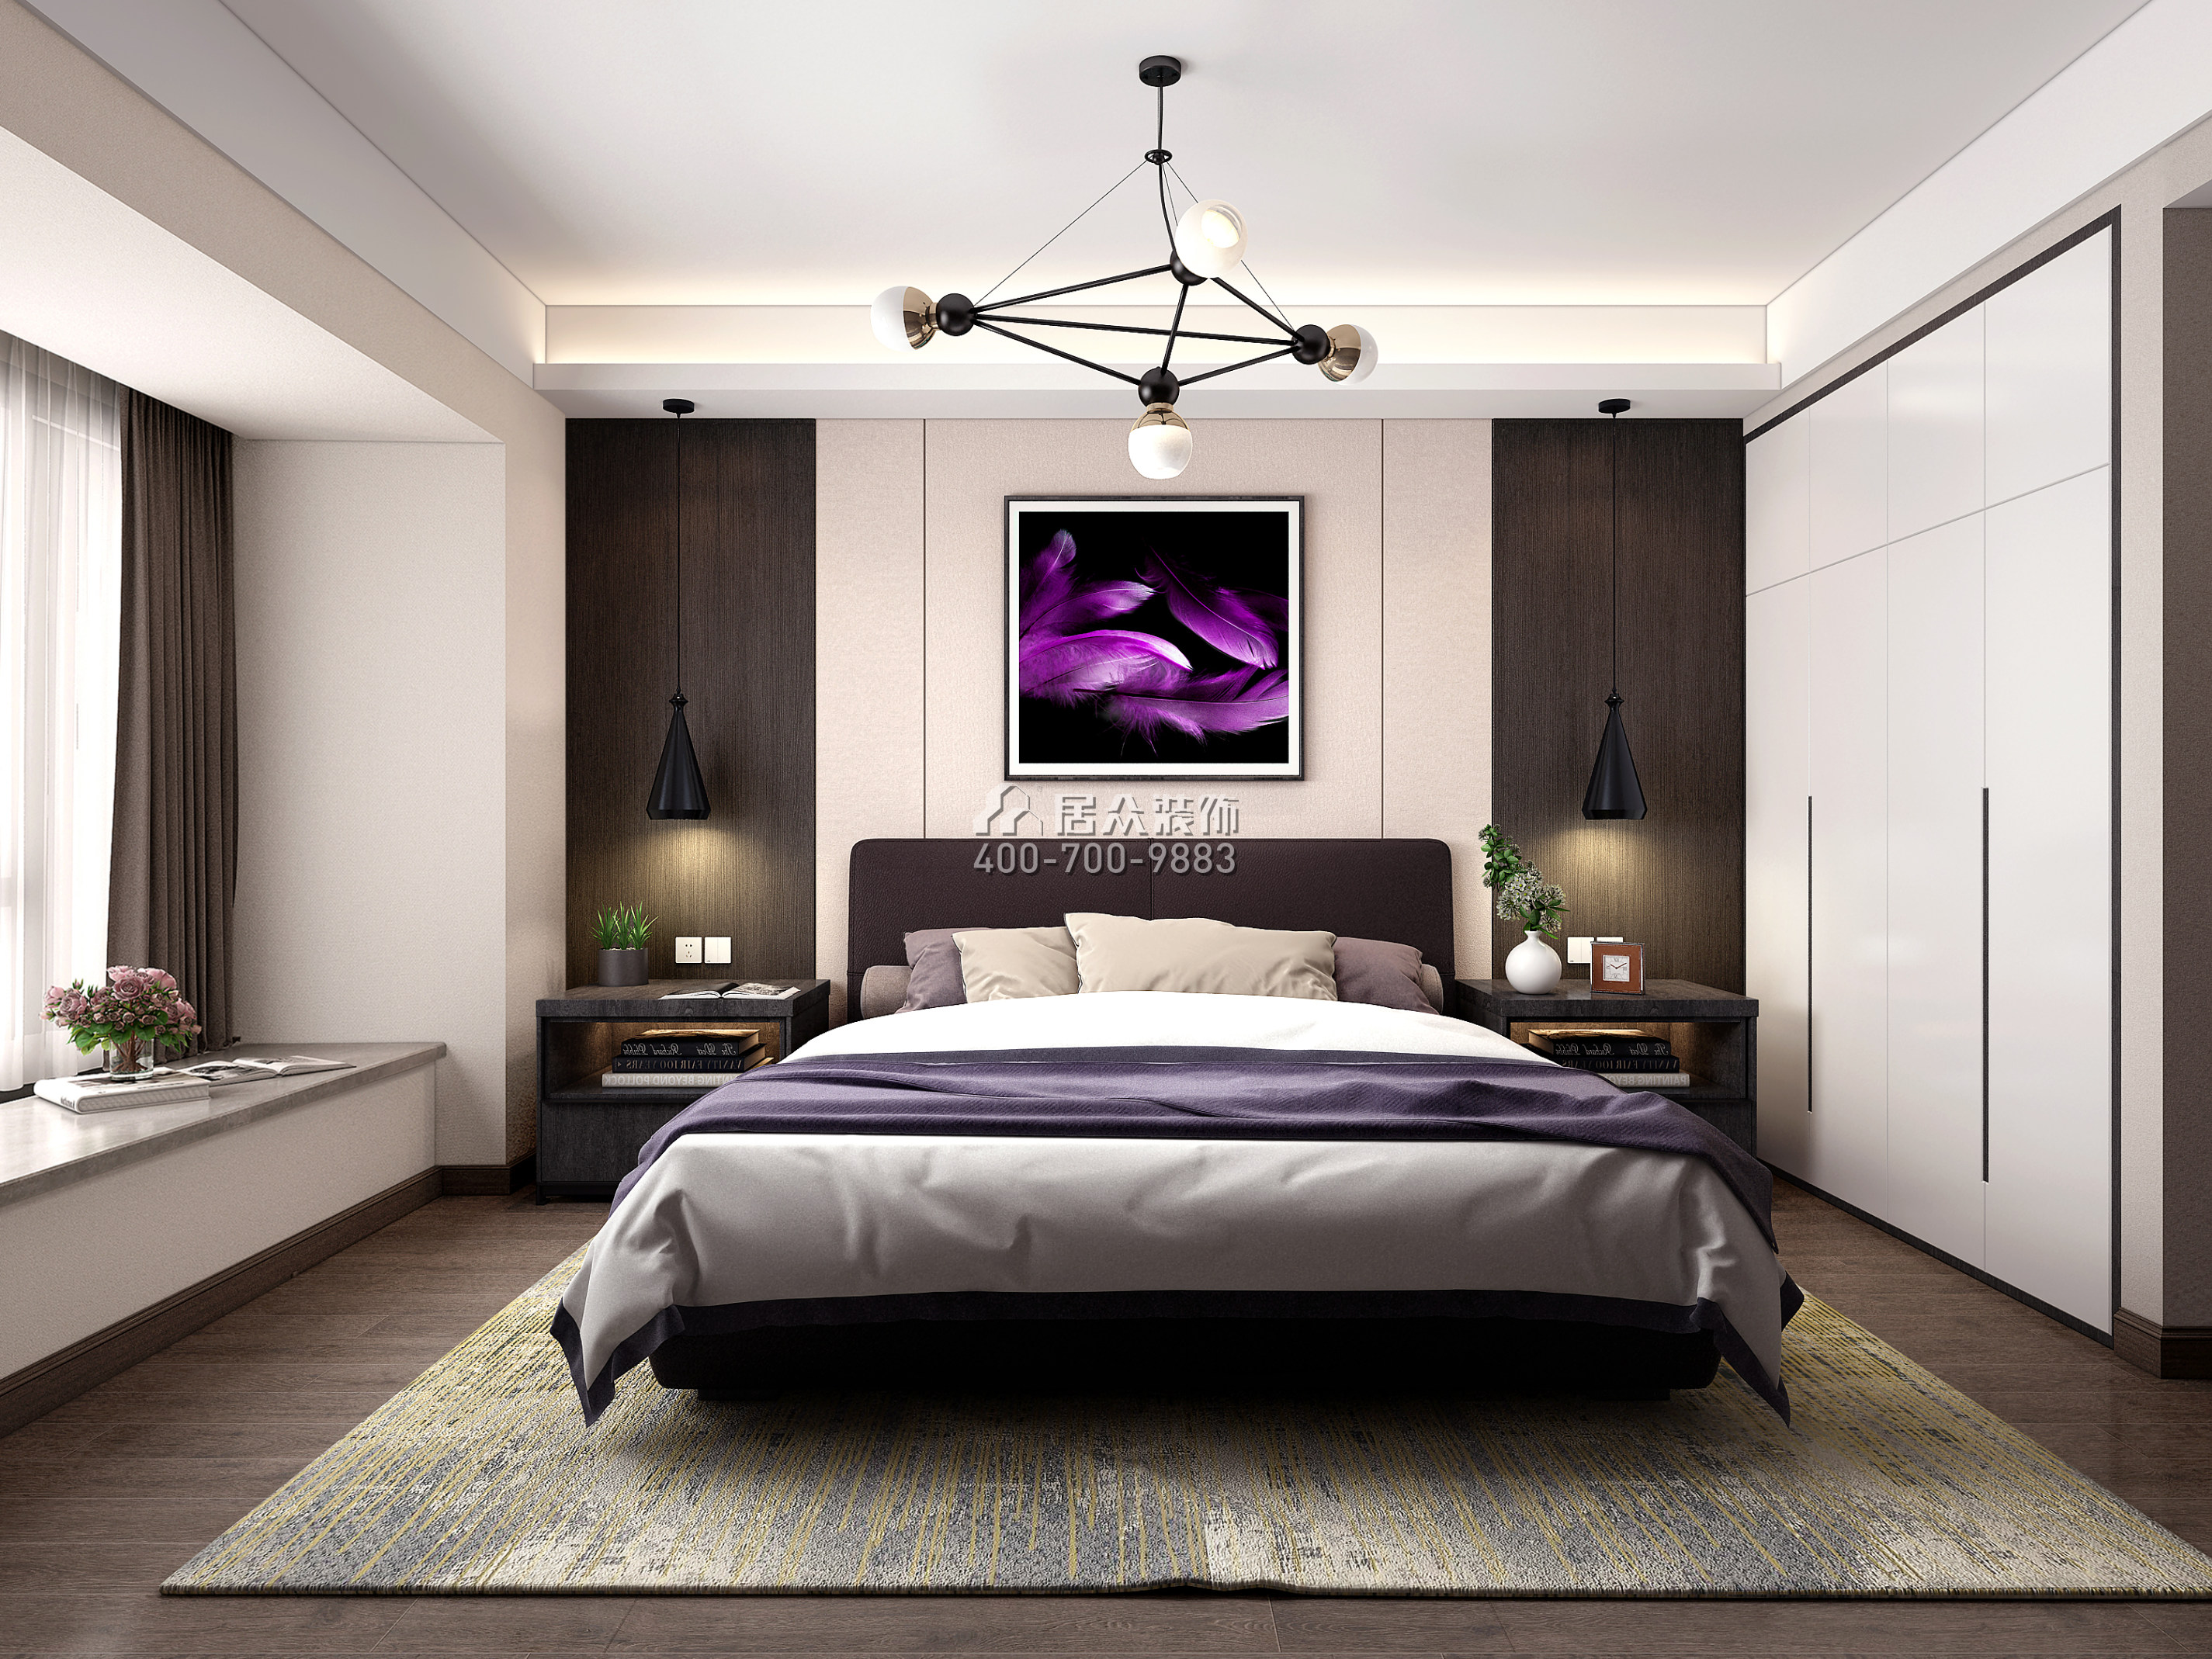 華潤城潤府168平方米現代簡約風格平層戶型臥室裝修效果圖